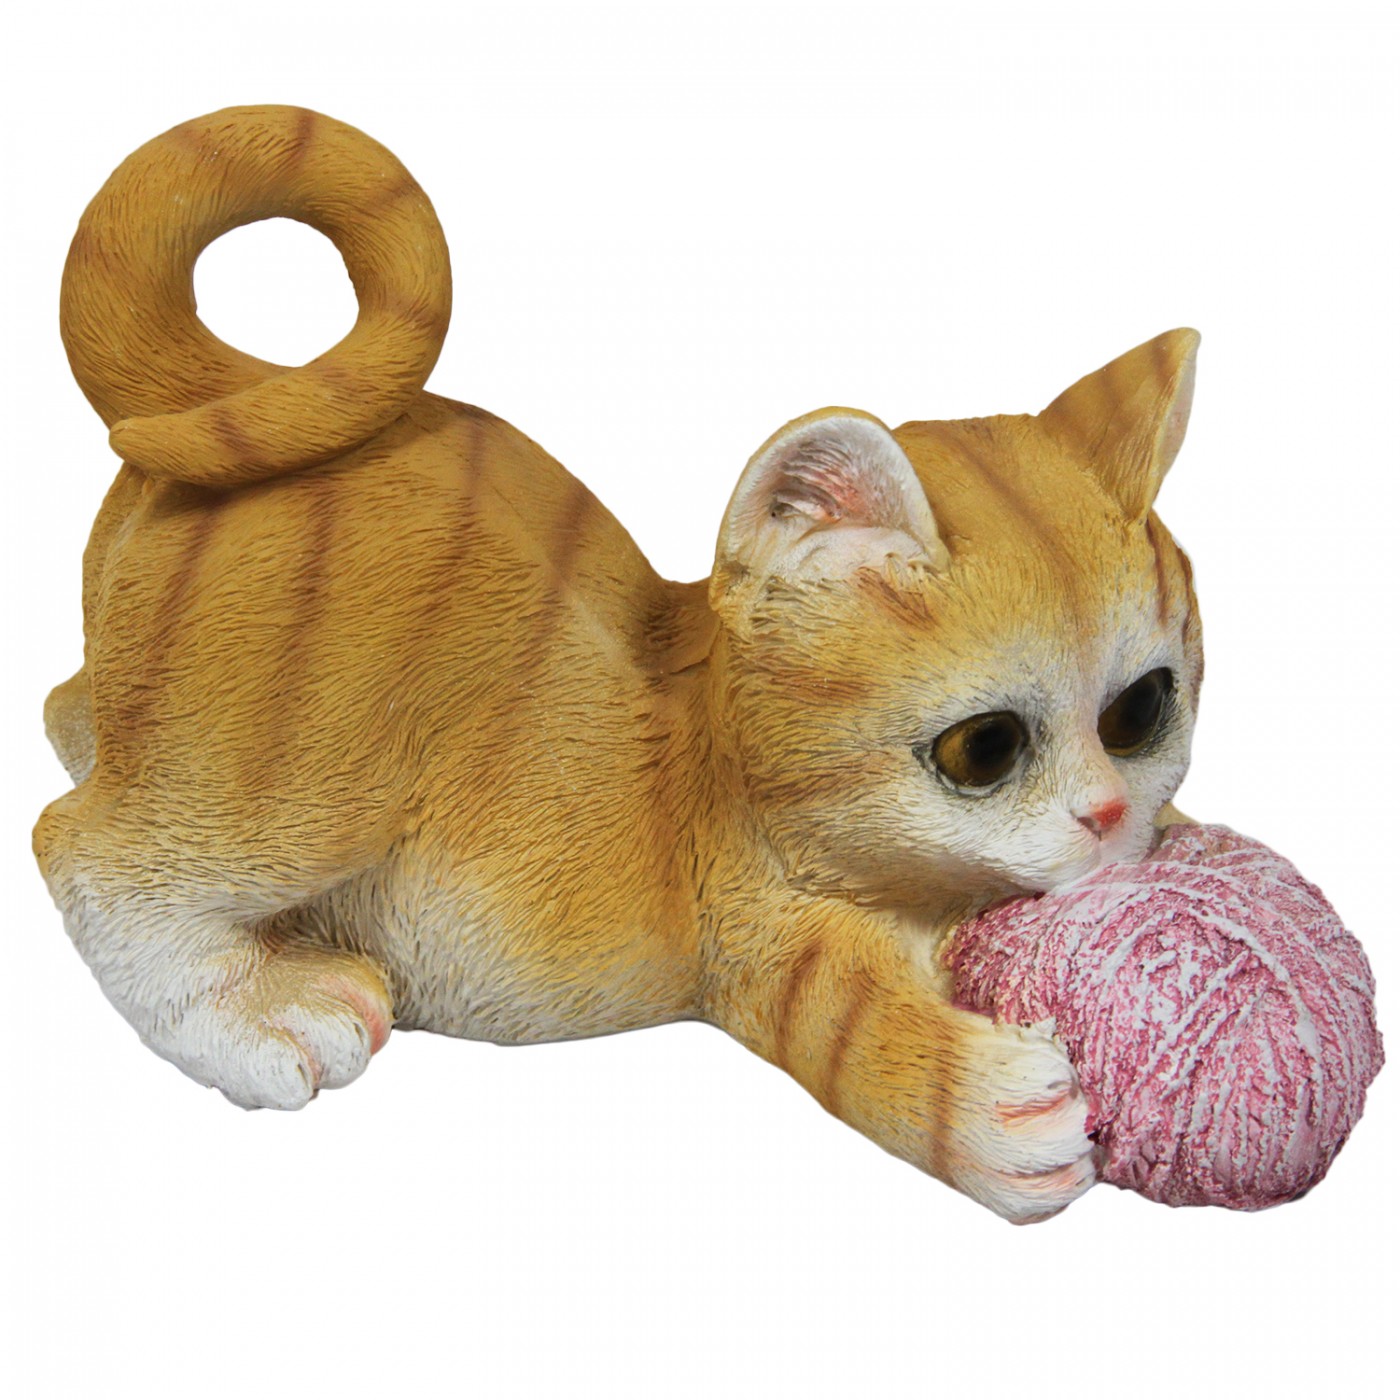 Figurka ozdobna kot z kulą nici